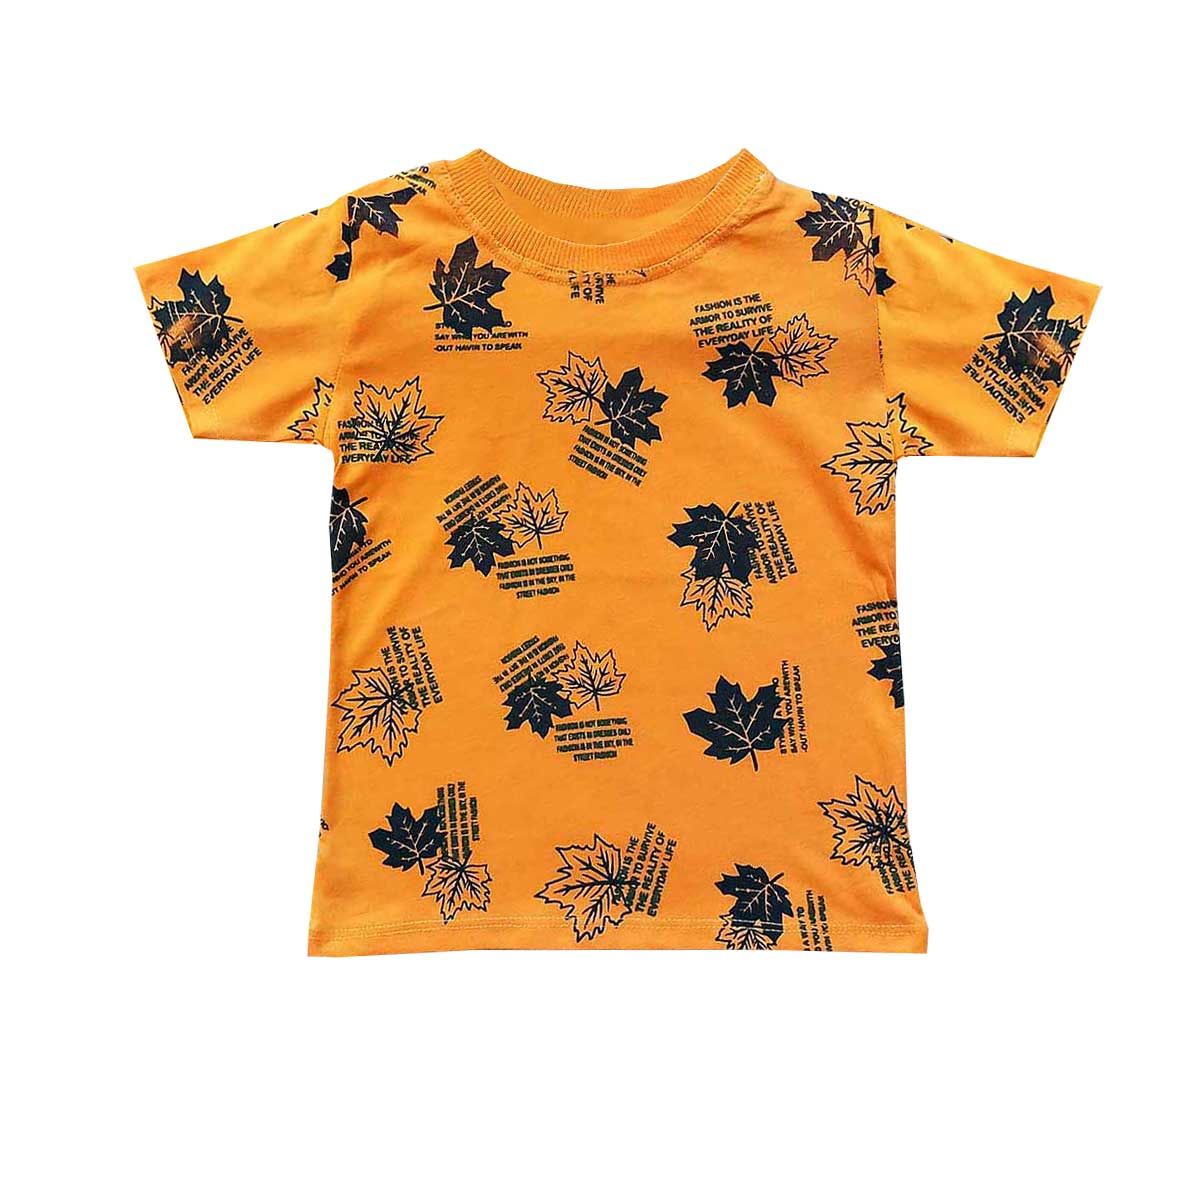 ست تی شرت و شلوارک بچگانه مدل برگ رنگ نارنجی -  - 2